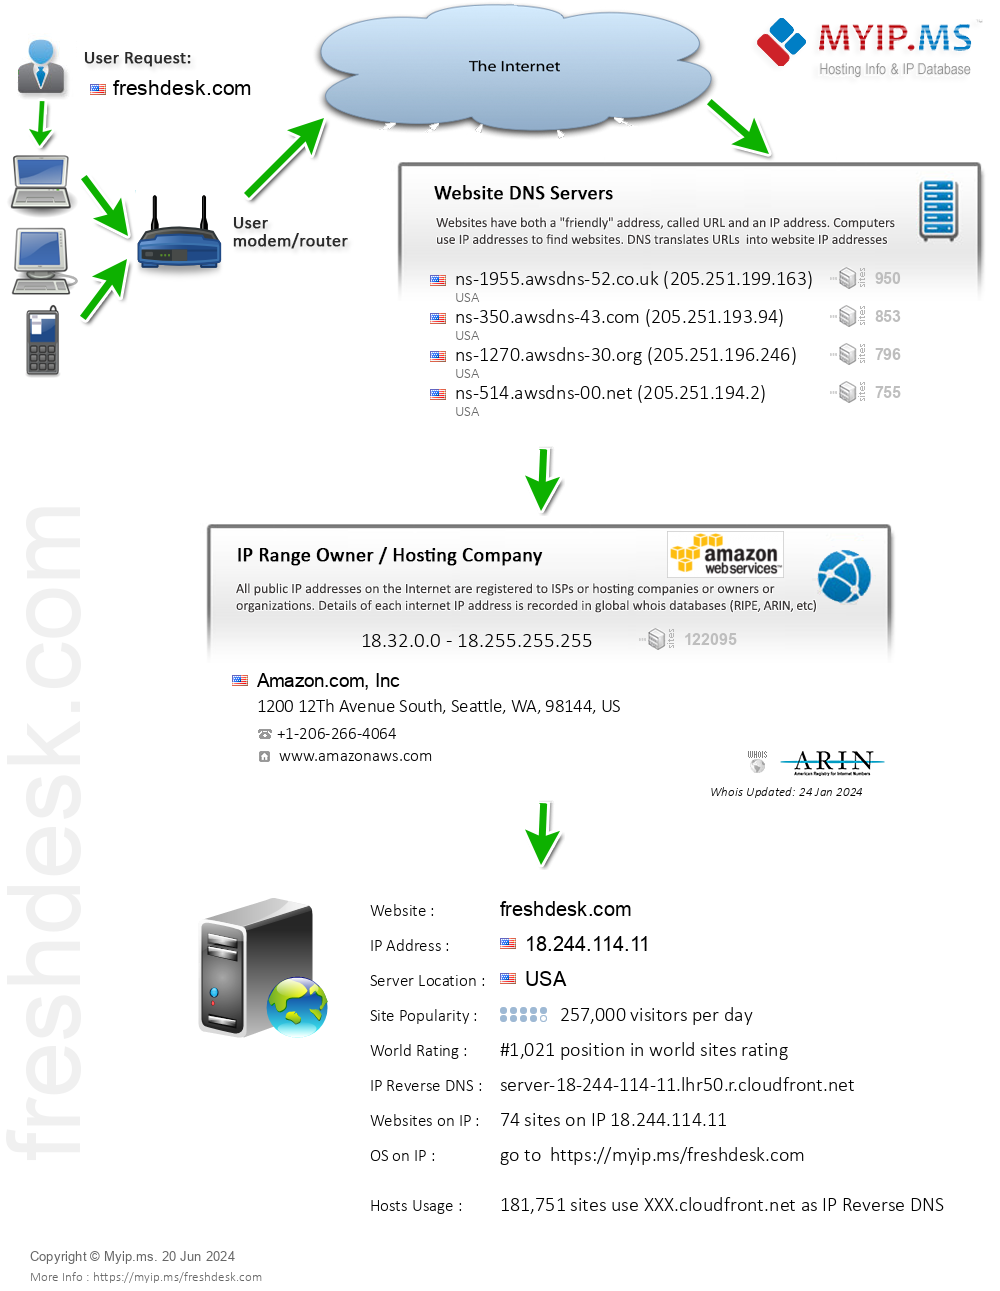 Freshdesk.com - Website Hosting Visual IP Diagram